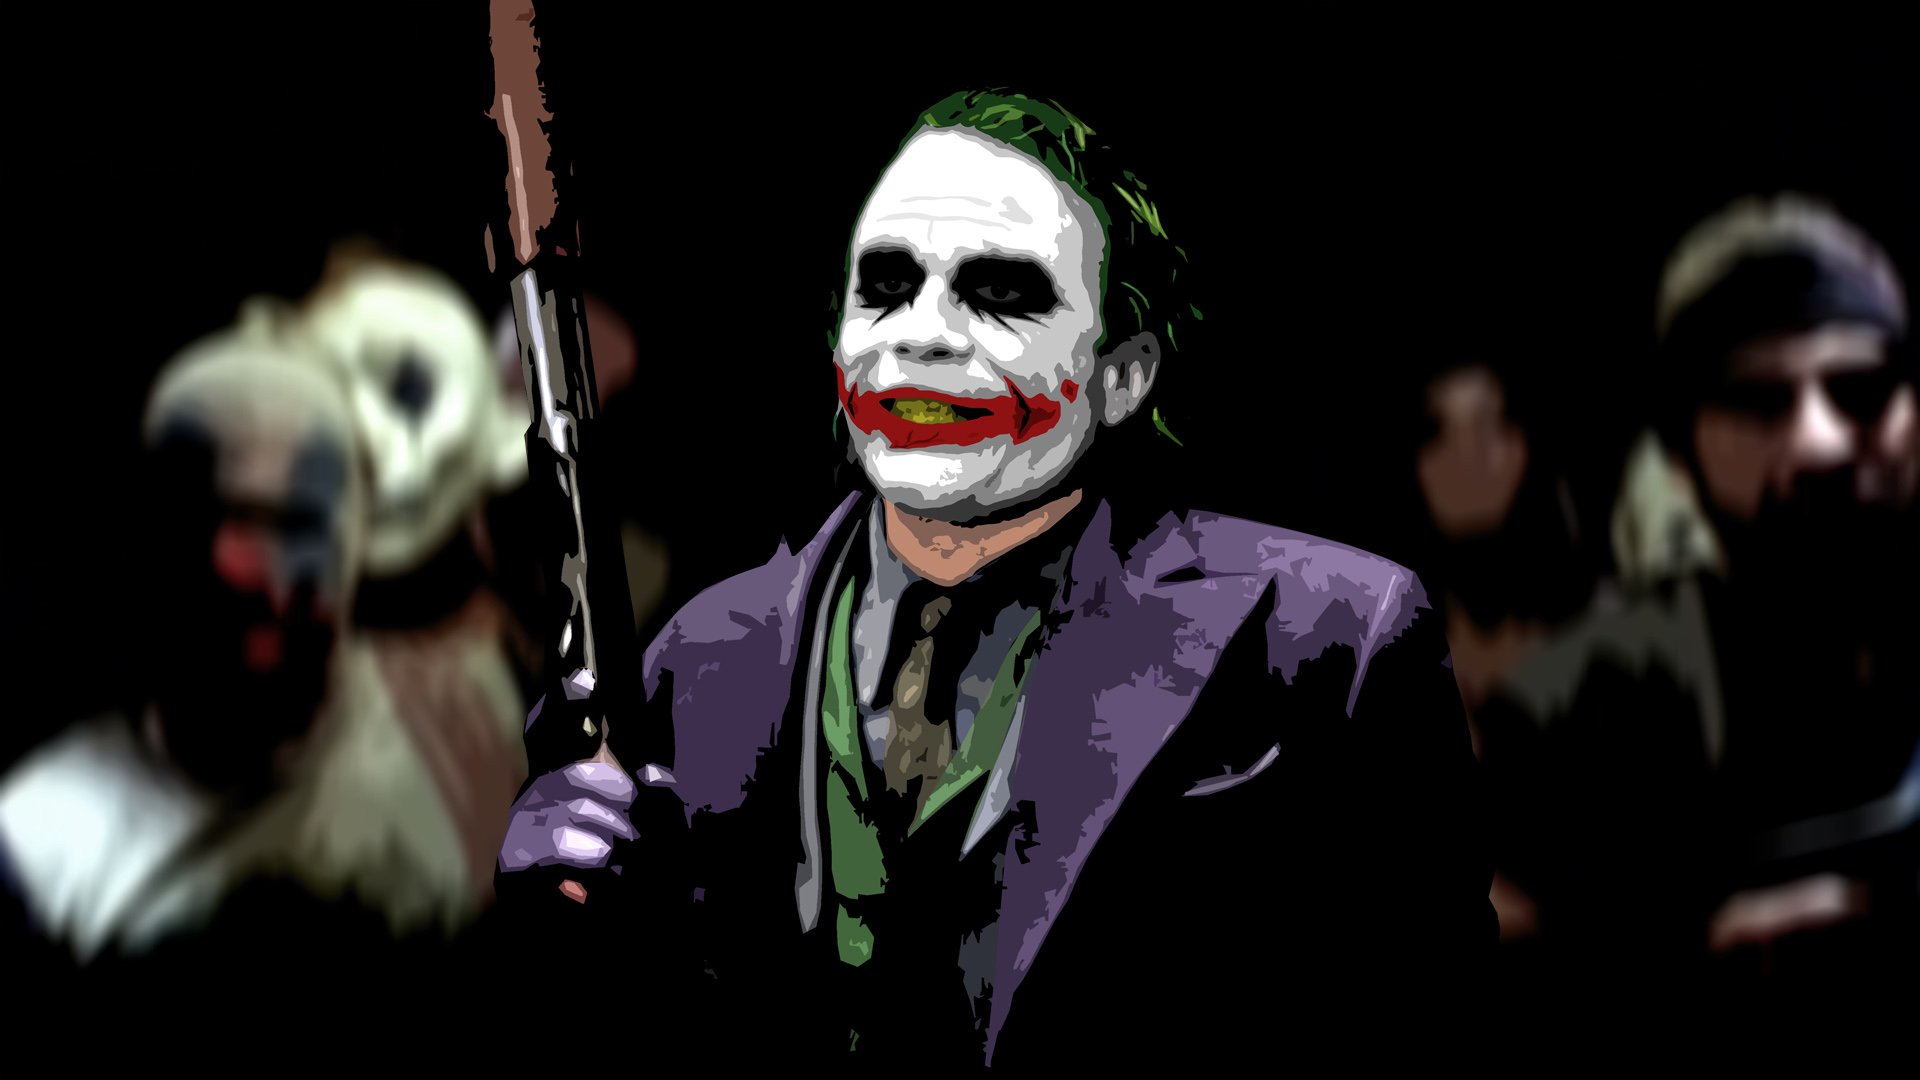 Download Mentahan Gambar Joker - HD Wallpaper 